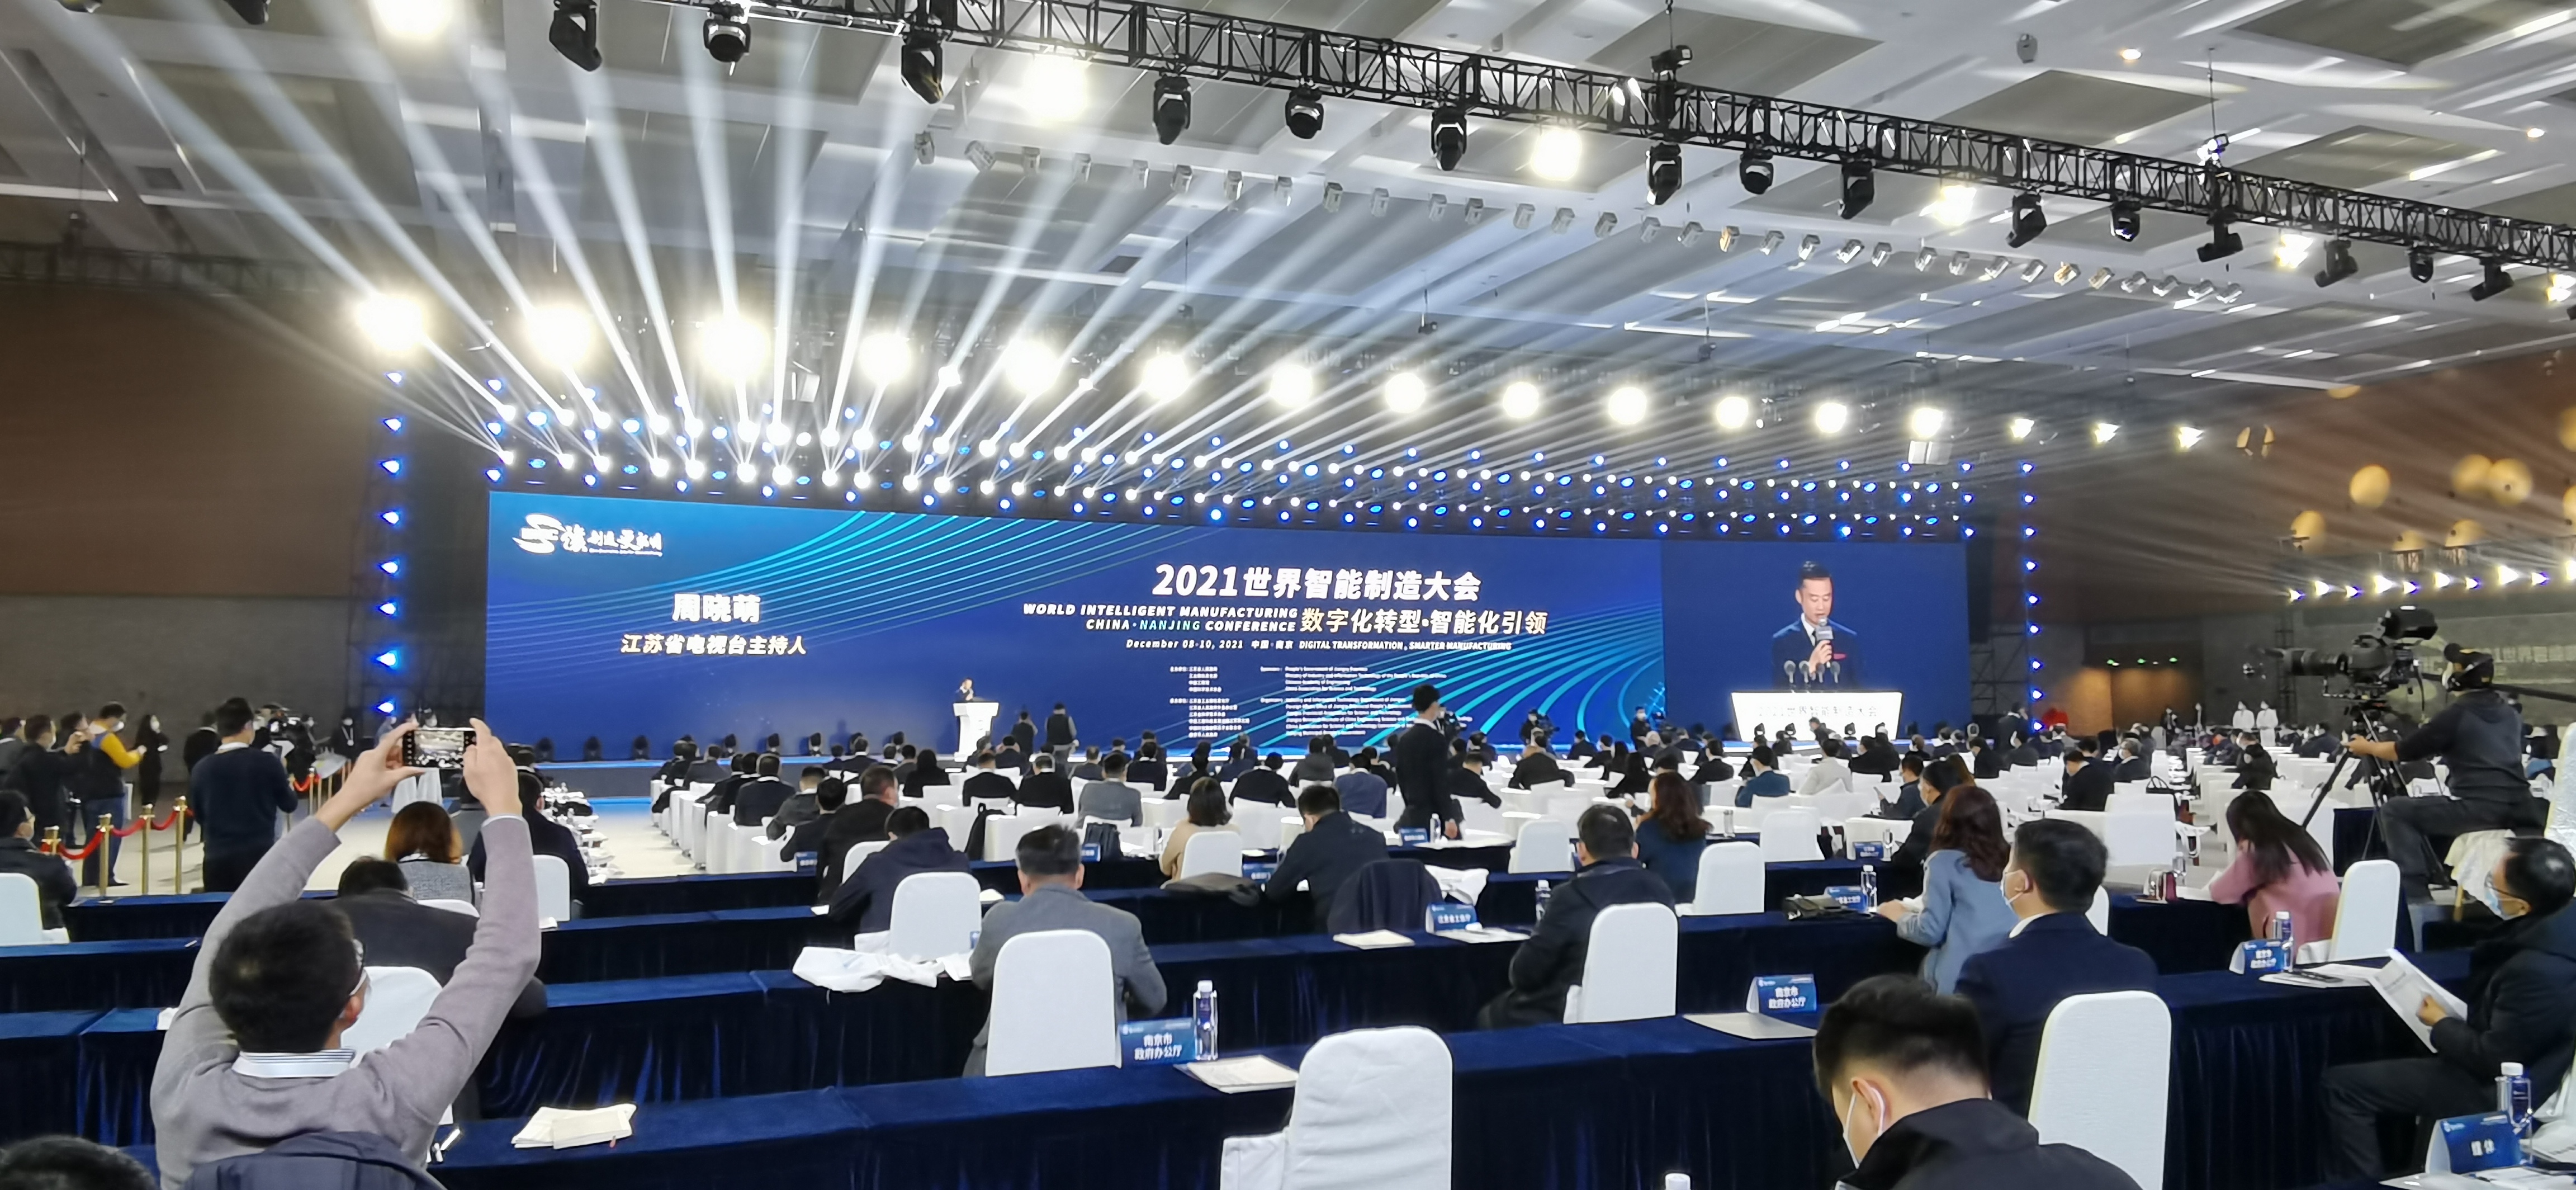 数字化转型,智能化引领!2021世界智能制造大会在南京开幕